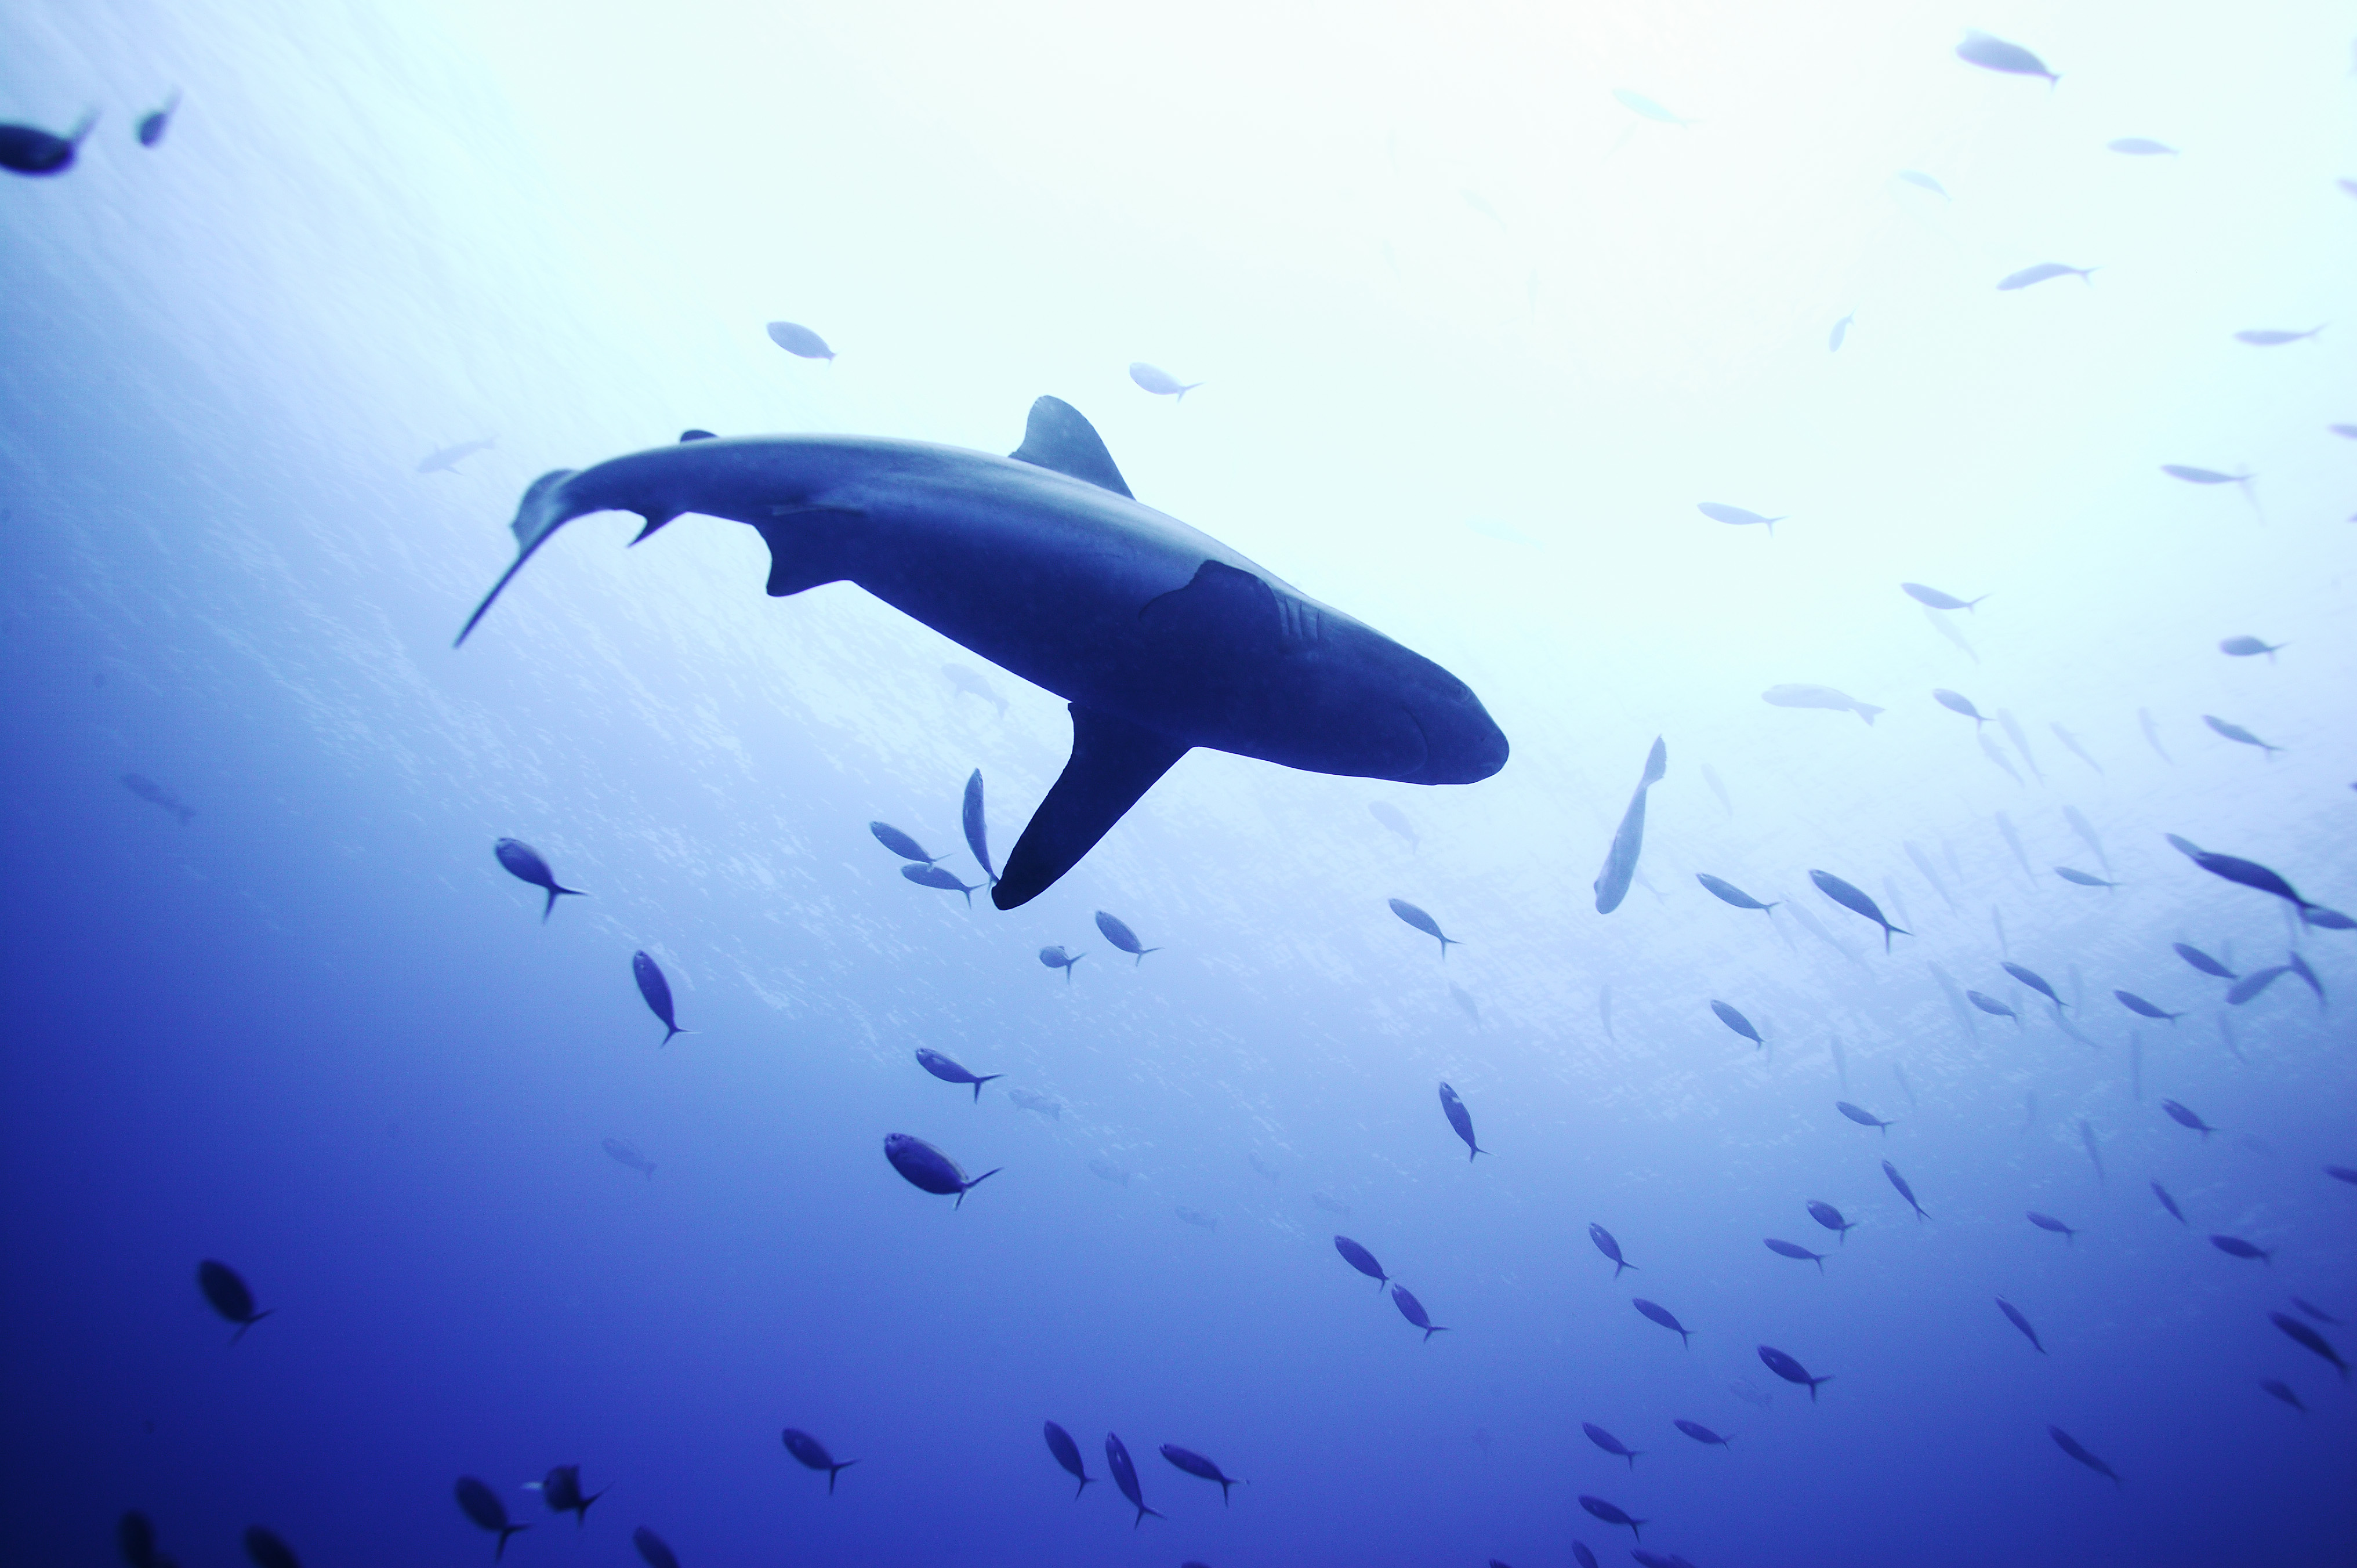 ゆんフリー写真素材集 No 1999 サメを見上げて パラオ共和国 パラオ